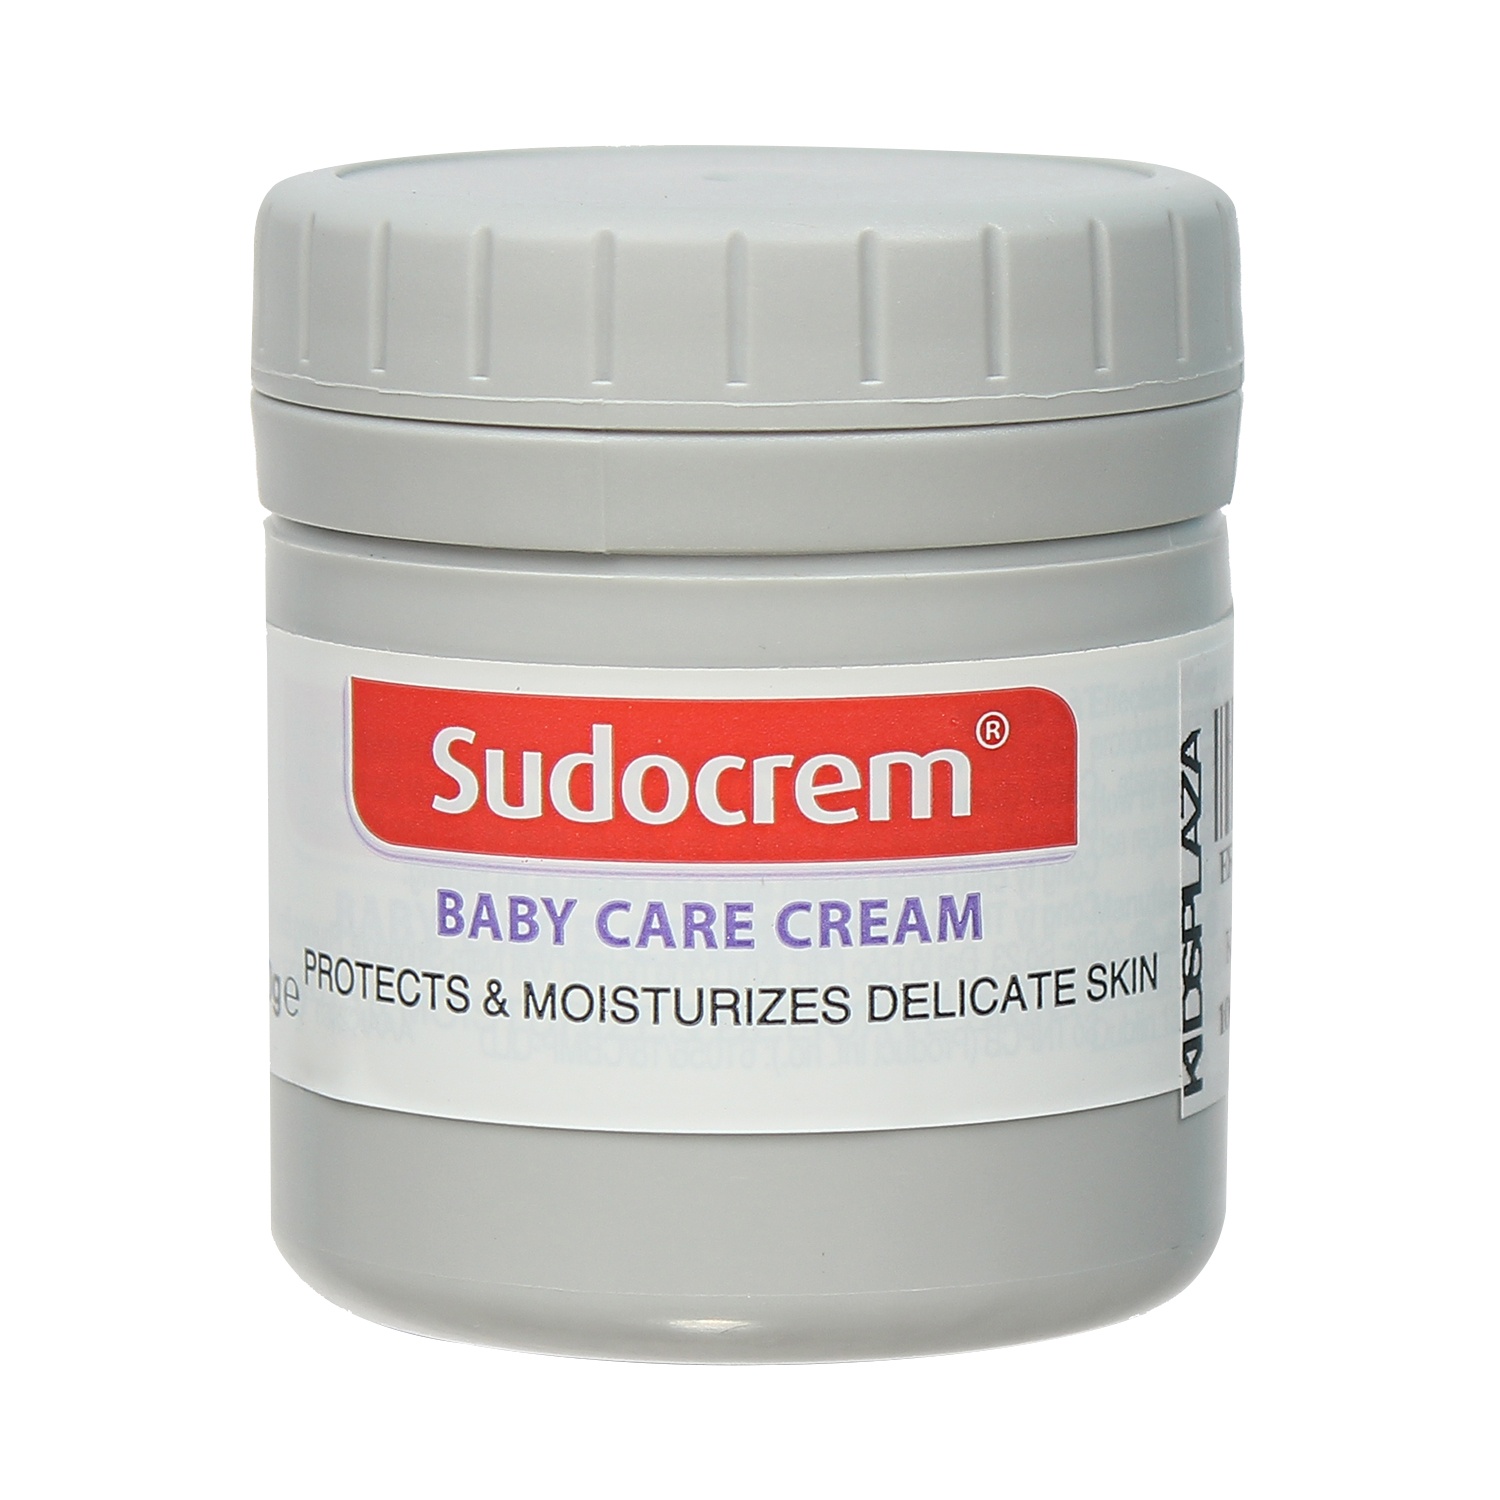 Kem chống hăm tã Sudocrem Baby Care Cream hỗ trợ điều trị mẩn đỏ, ngứa, hăm đỏ (60g)